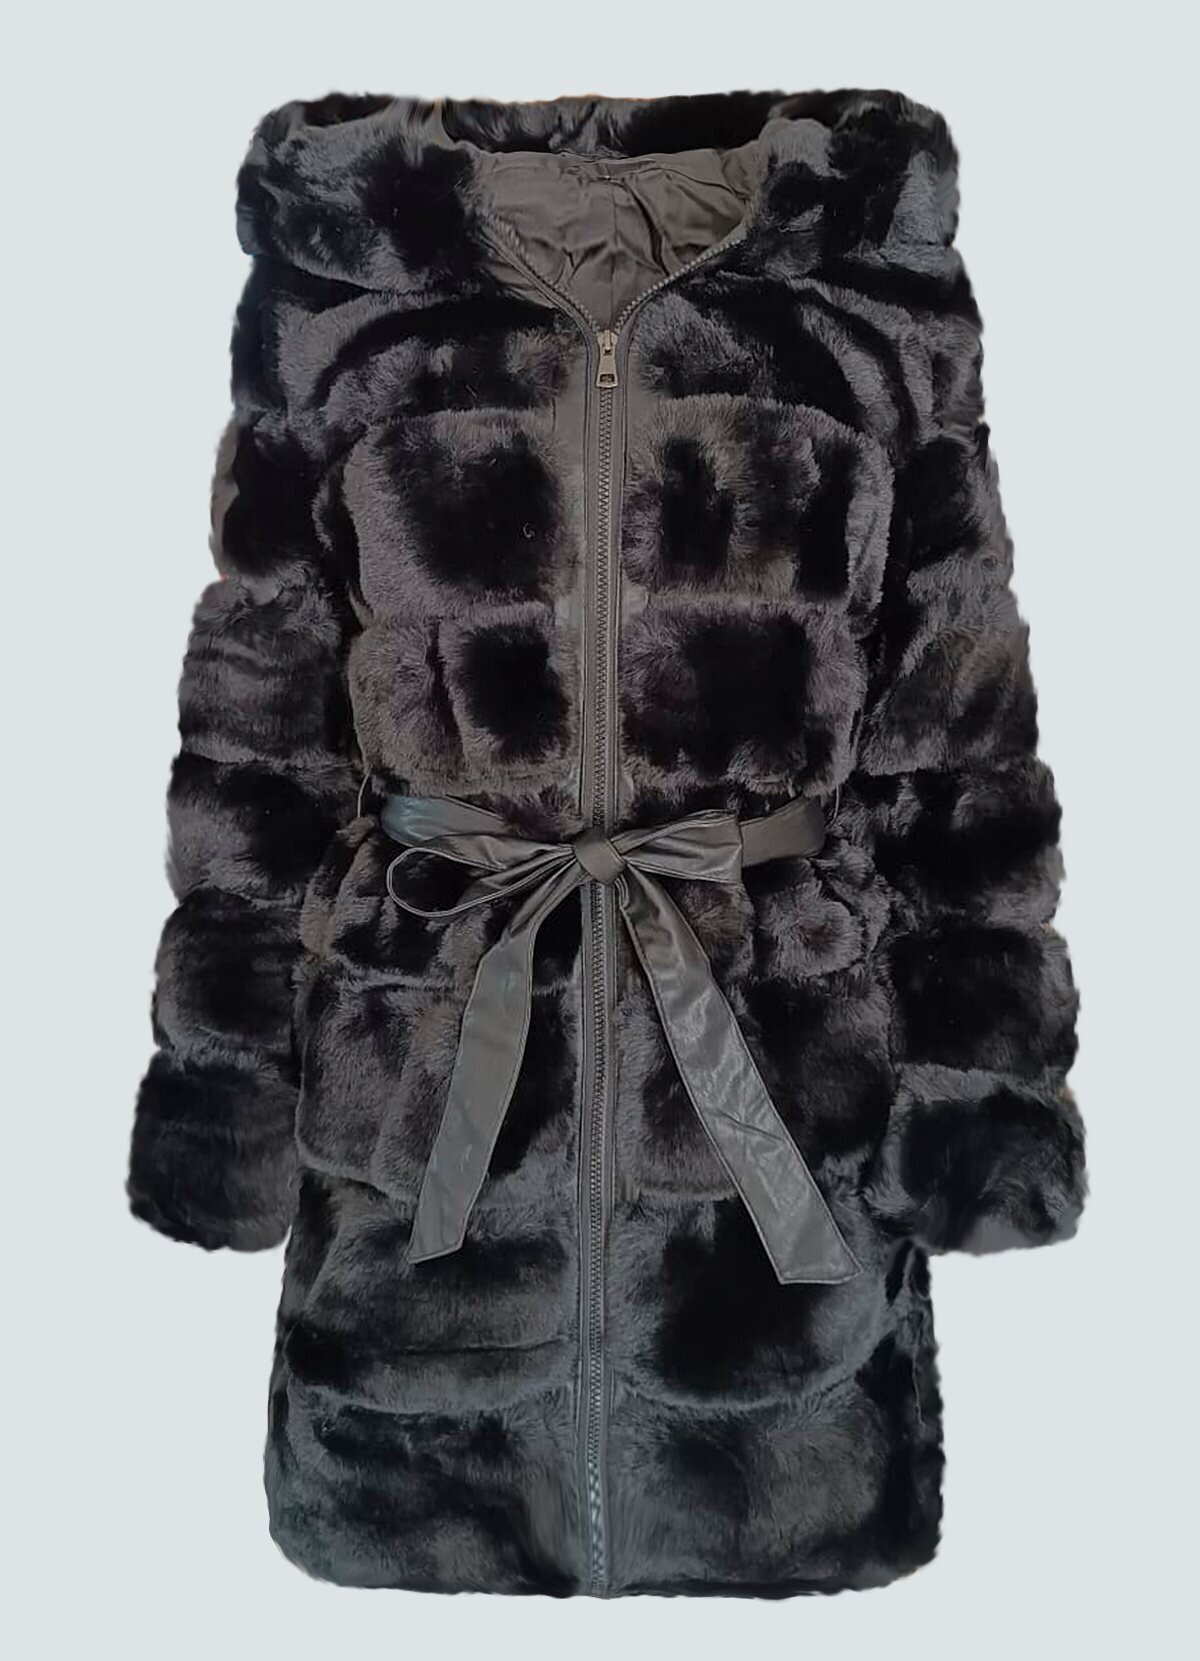 μεσάτο γούνινο μπουφάν με δερματίνη λεπτομέρειες F/W 2022/23 -  Parizianista.gr